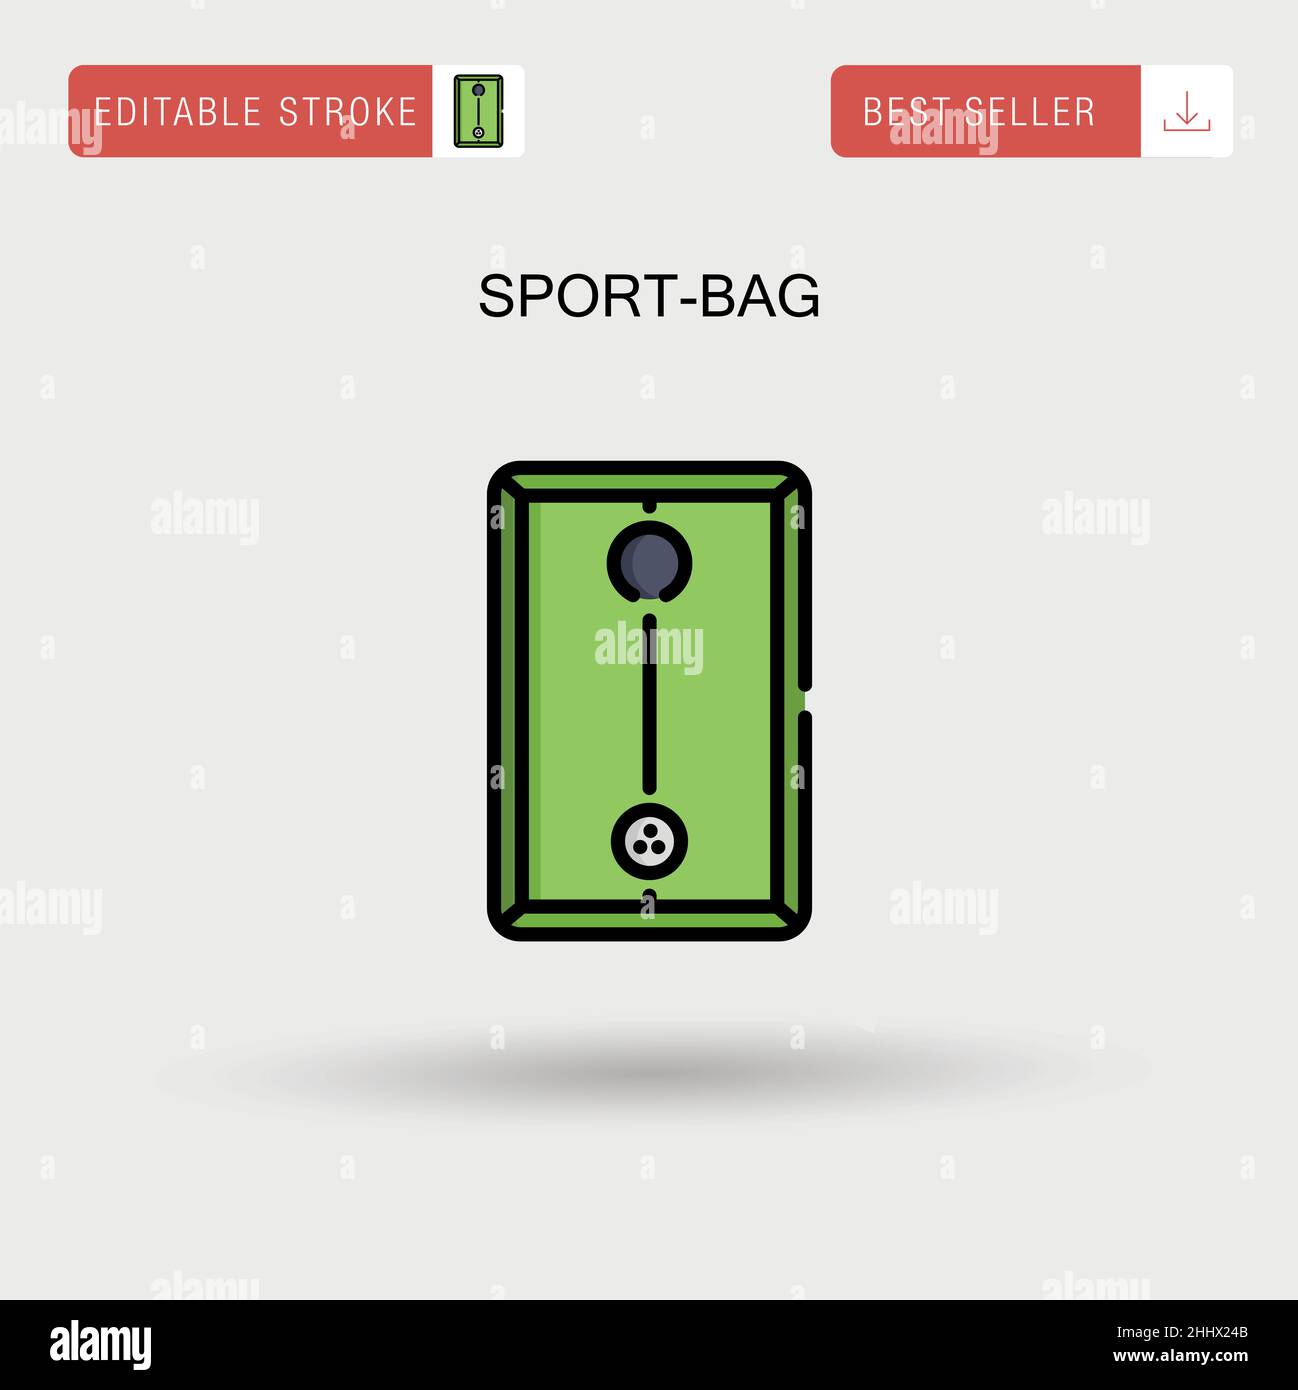 Einfaches Vektorsymbol für Sporttaschen. Stock Vektor